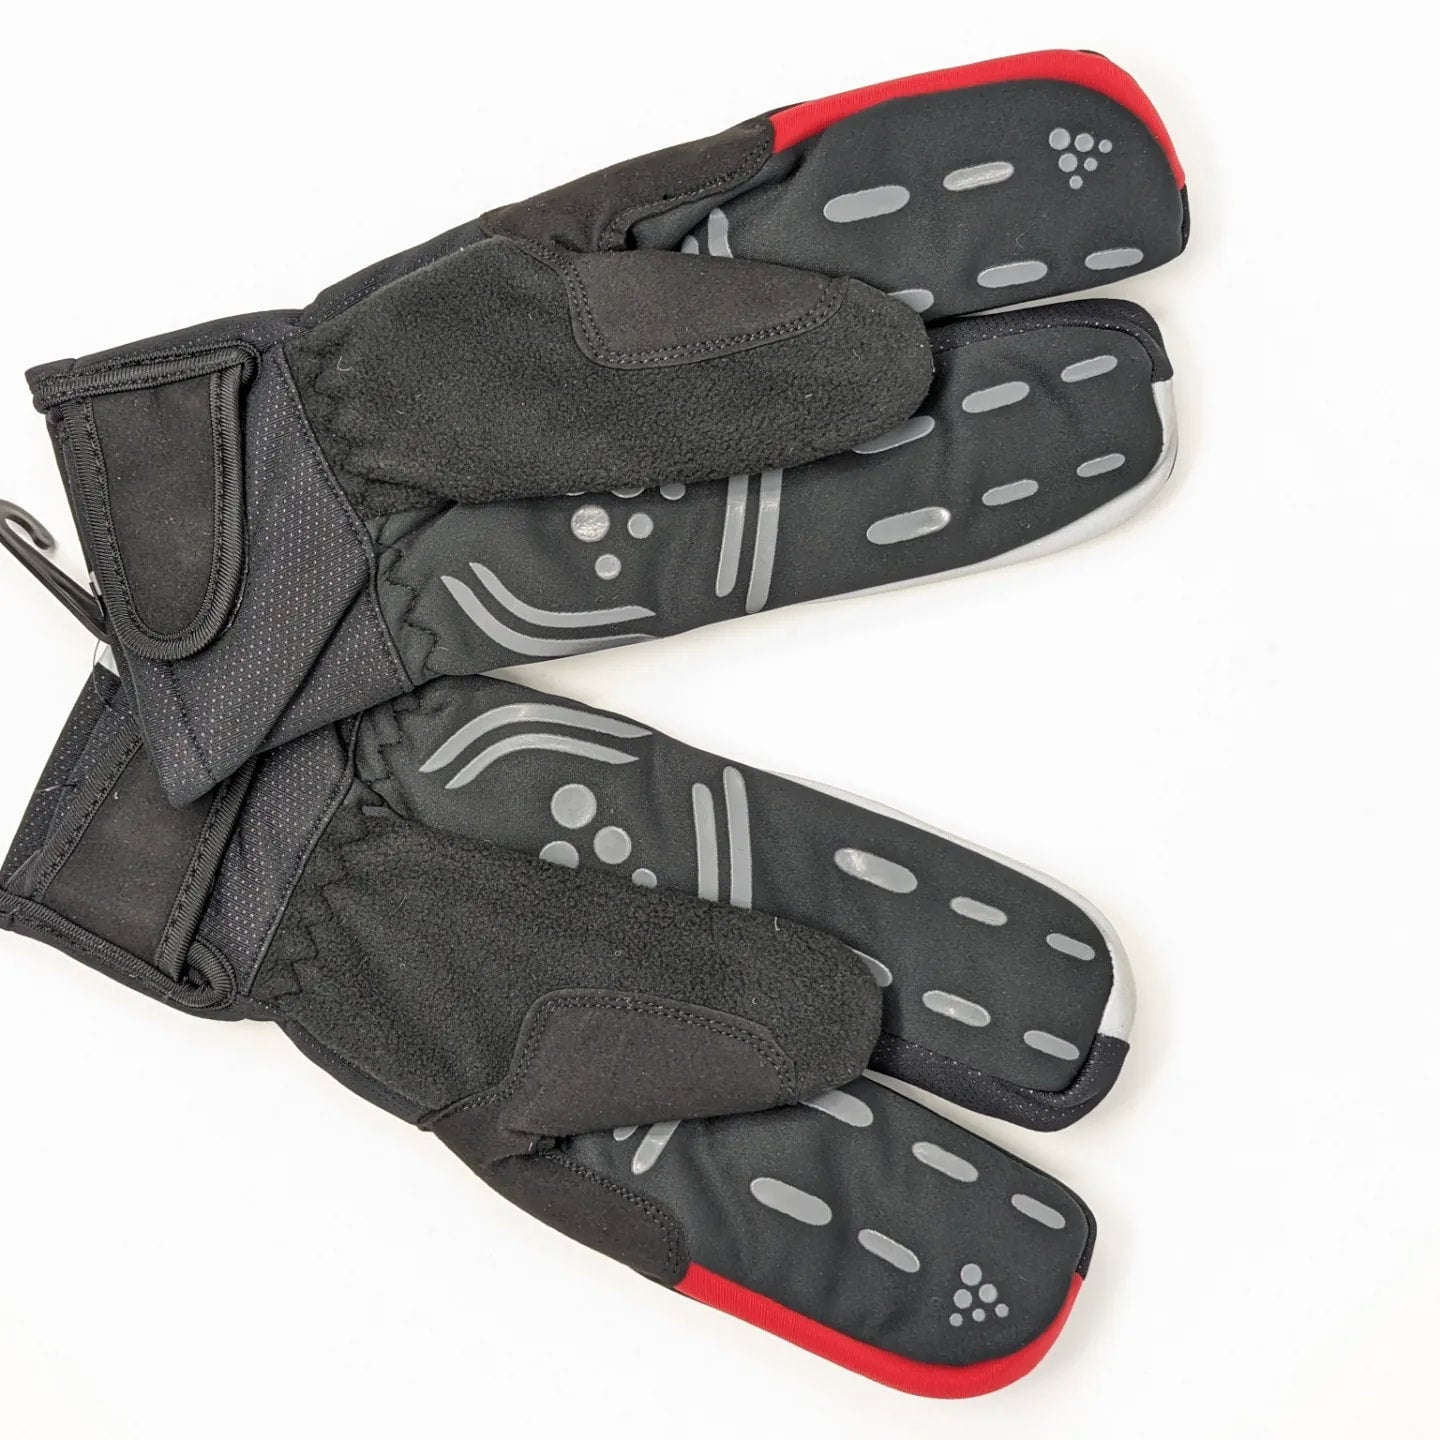 Craft Siberian 2.0 Split Finger Gloves - Unisex L Black